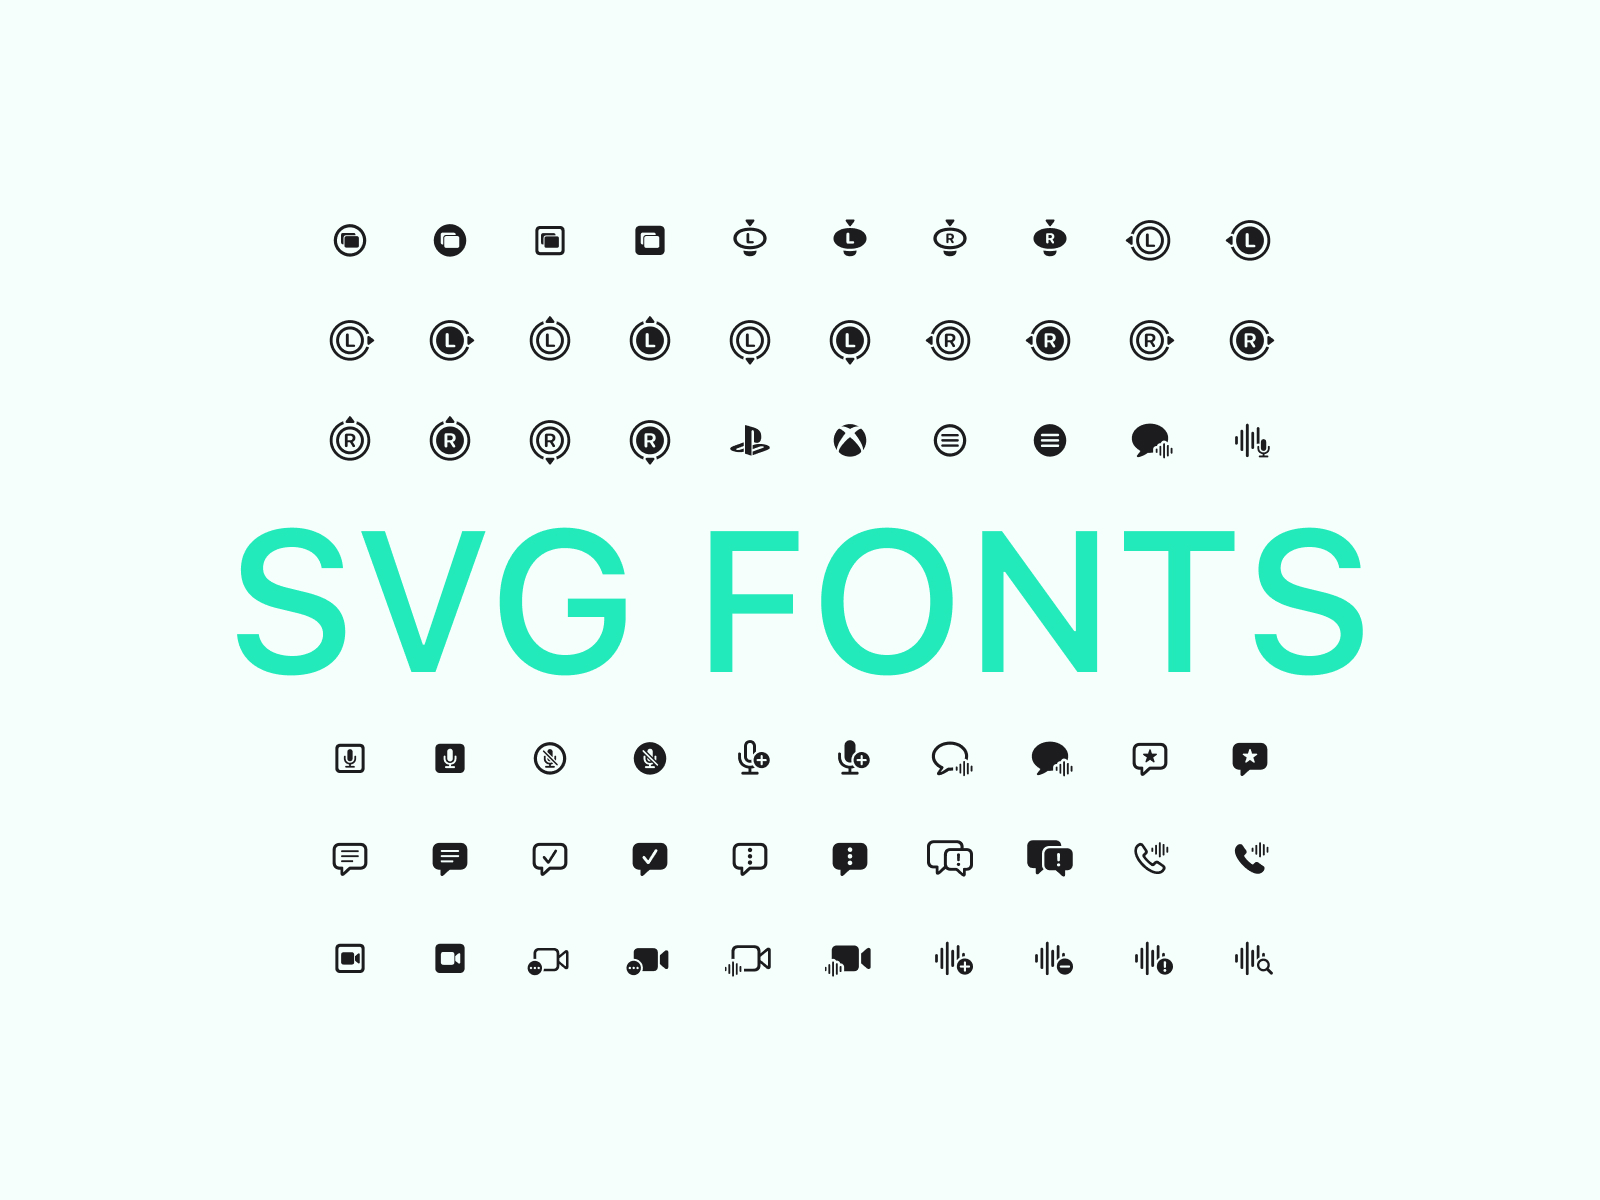 SF Symbols 2.1 Icons